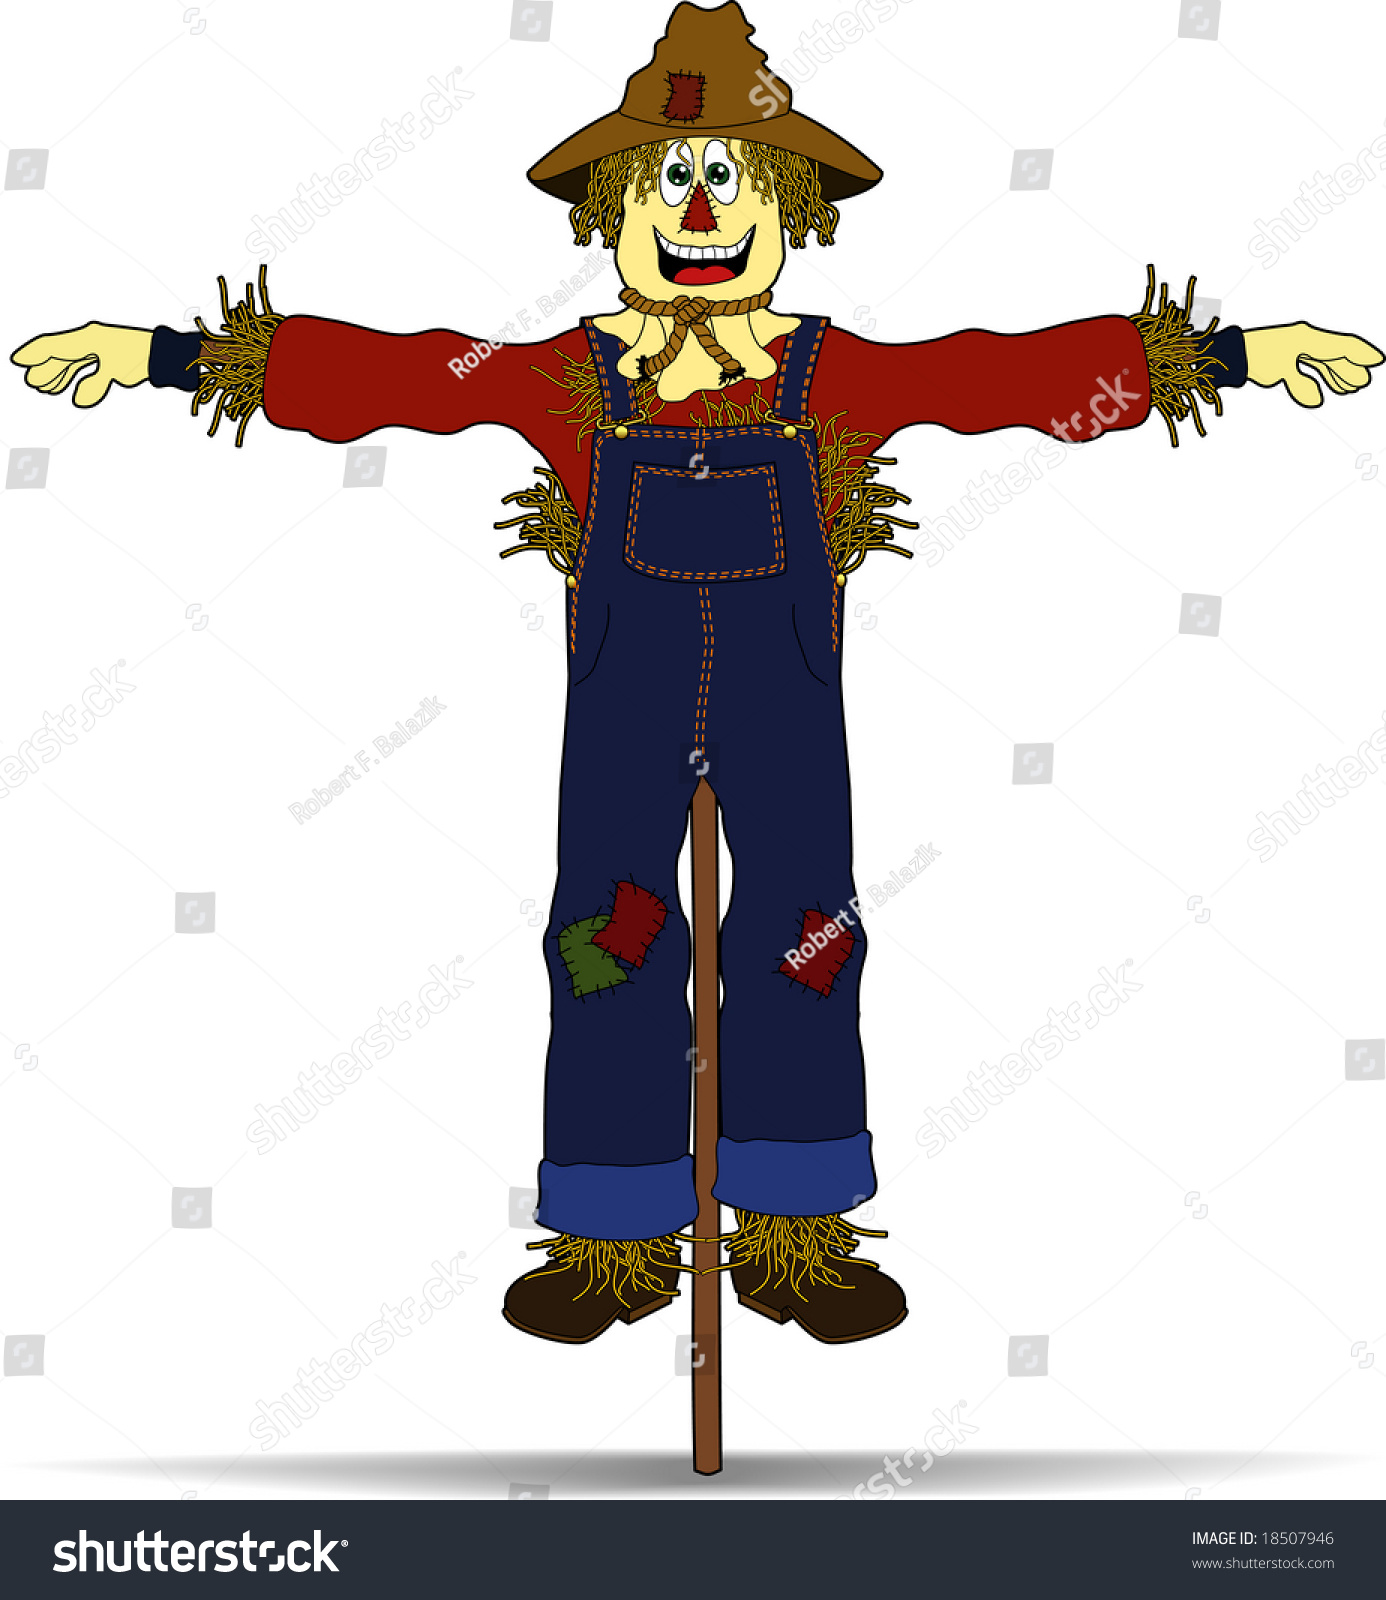 Vector Cartoon Graphic Depicting A Happy Scarecrow - 18507946 ...